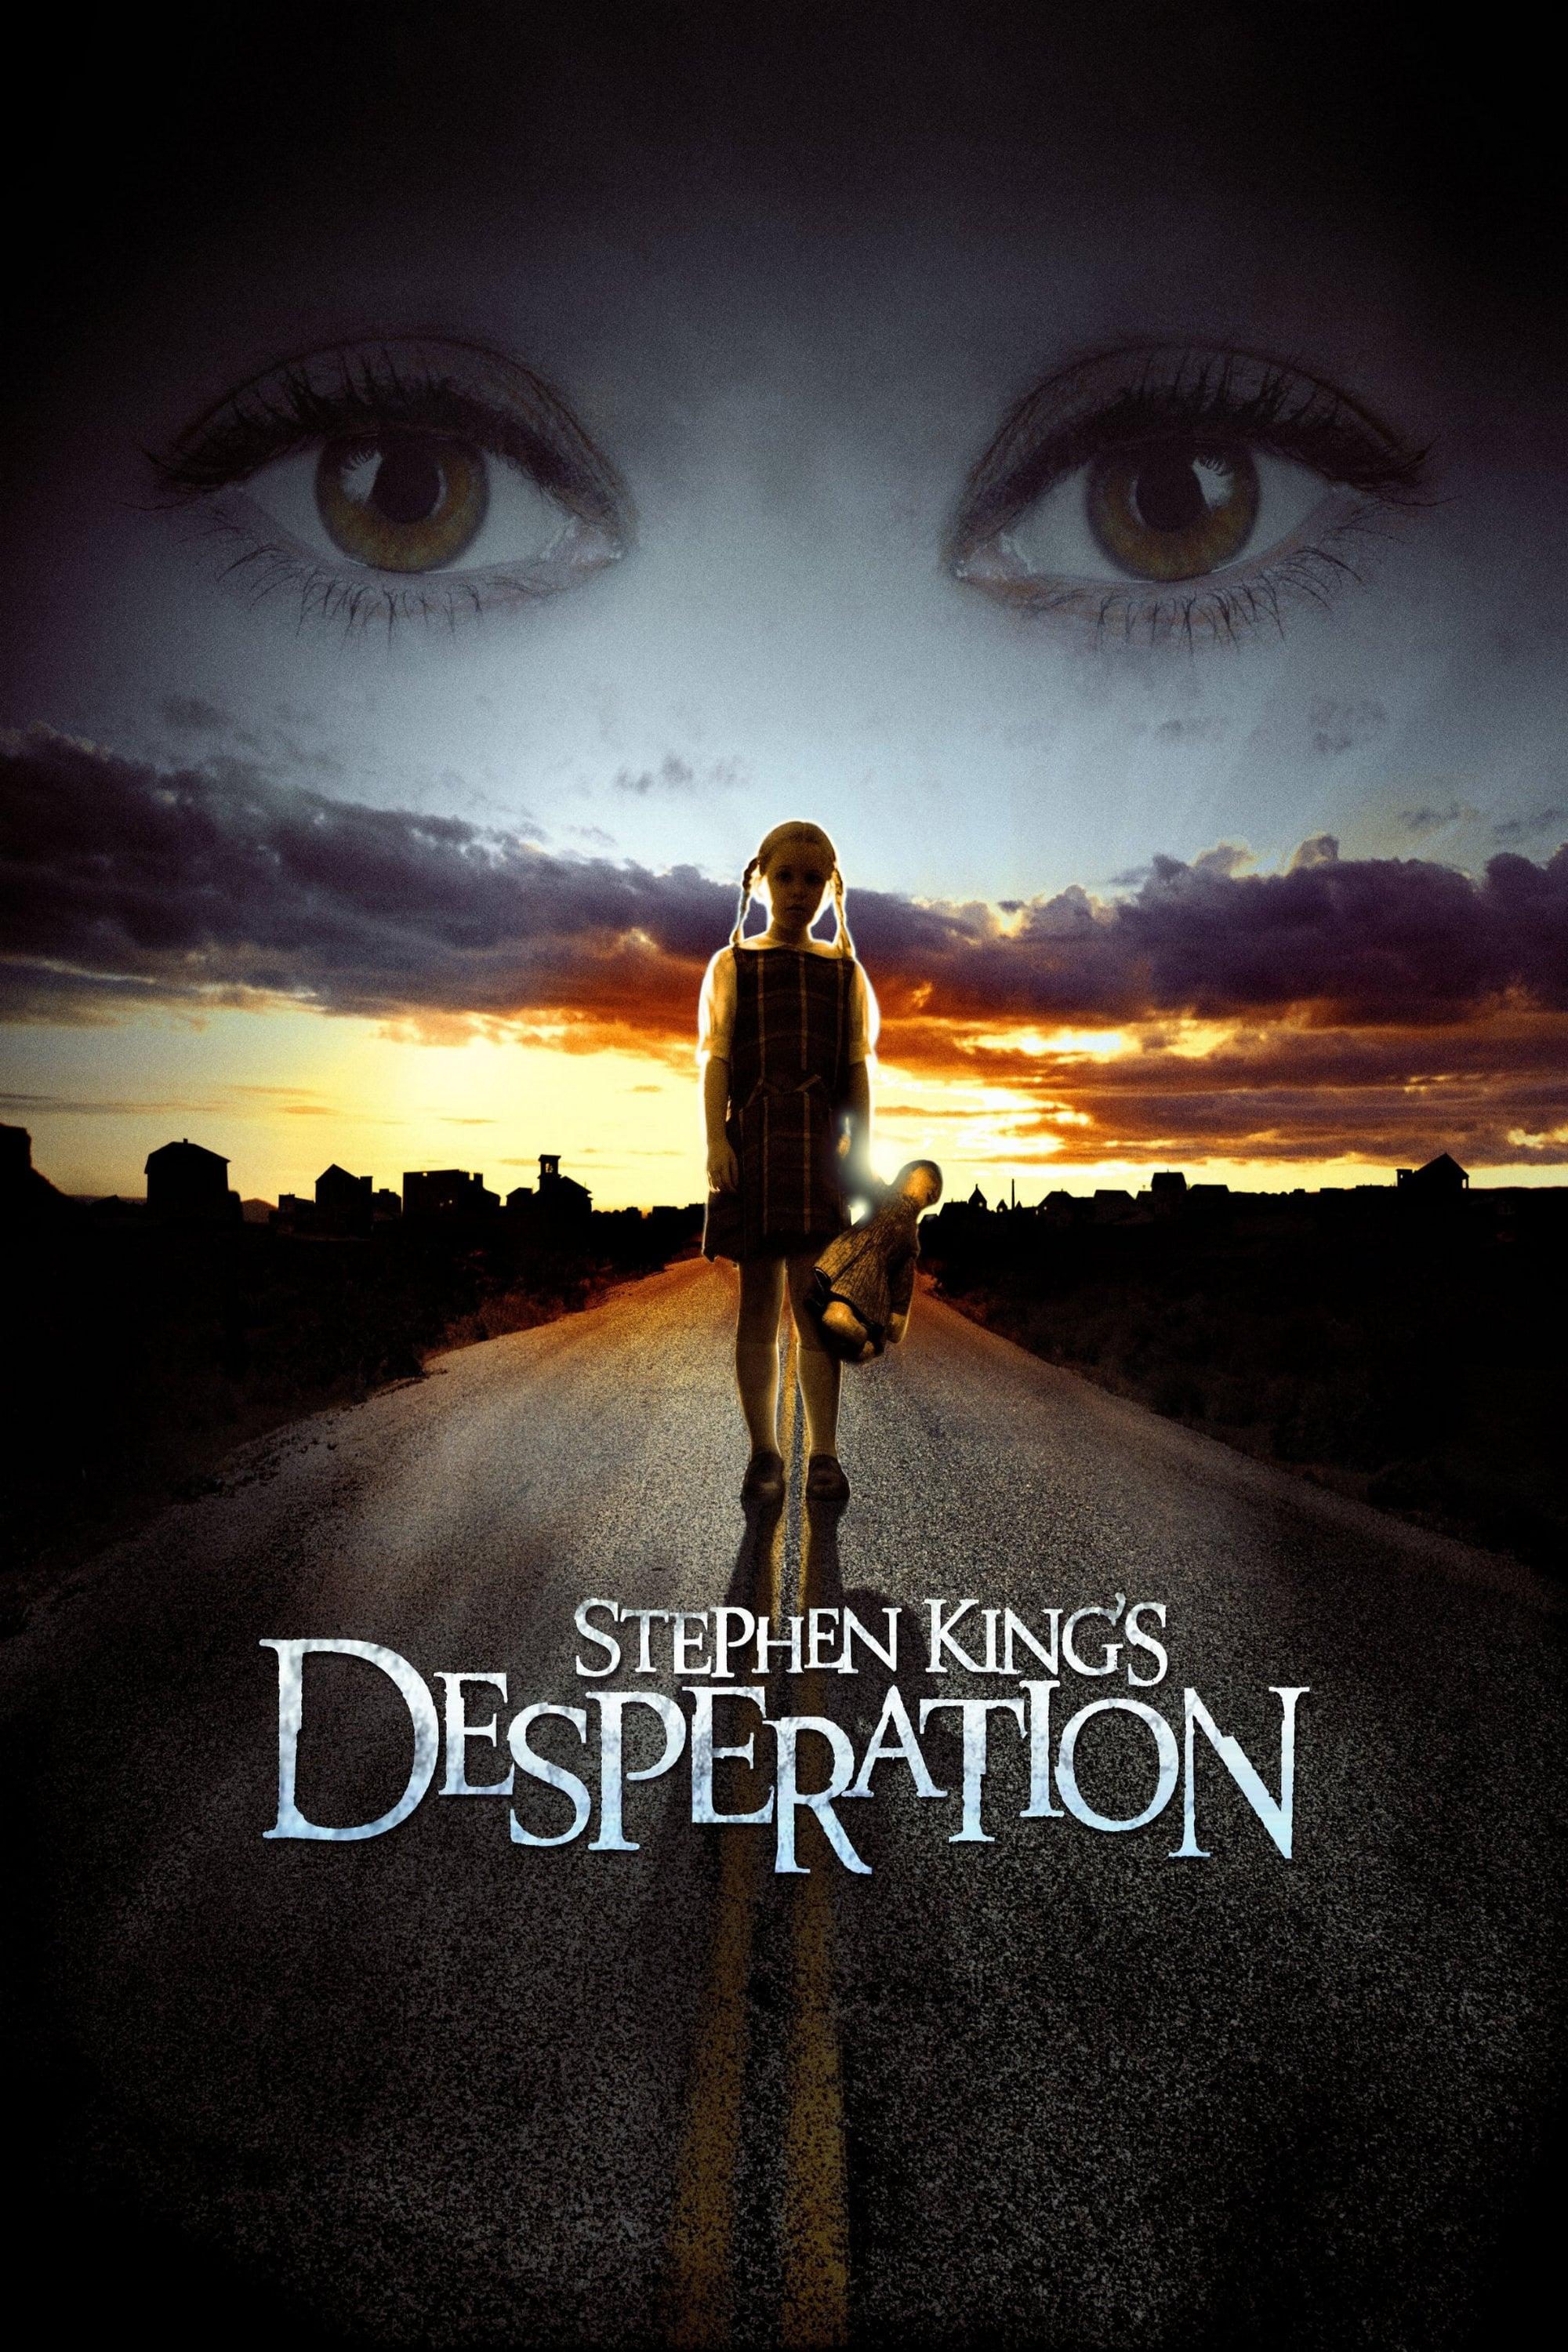 Desperation poster